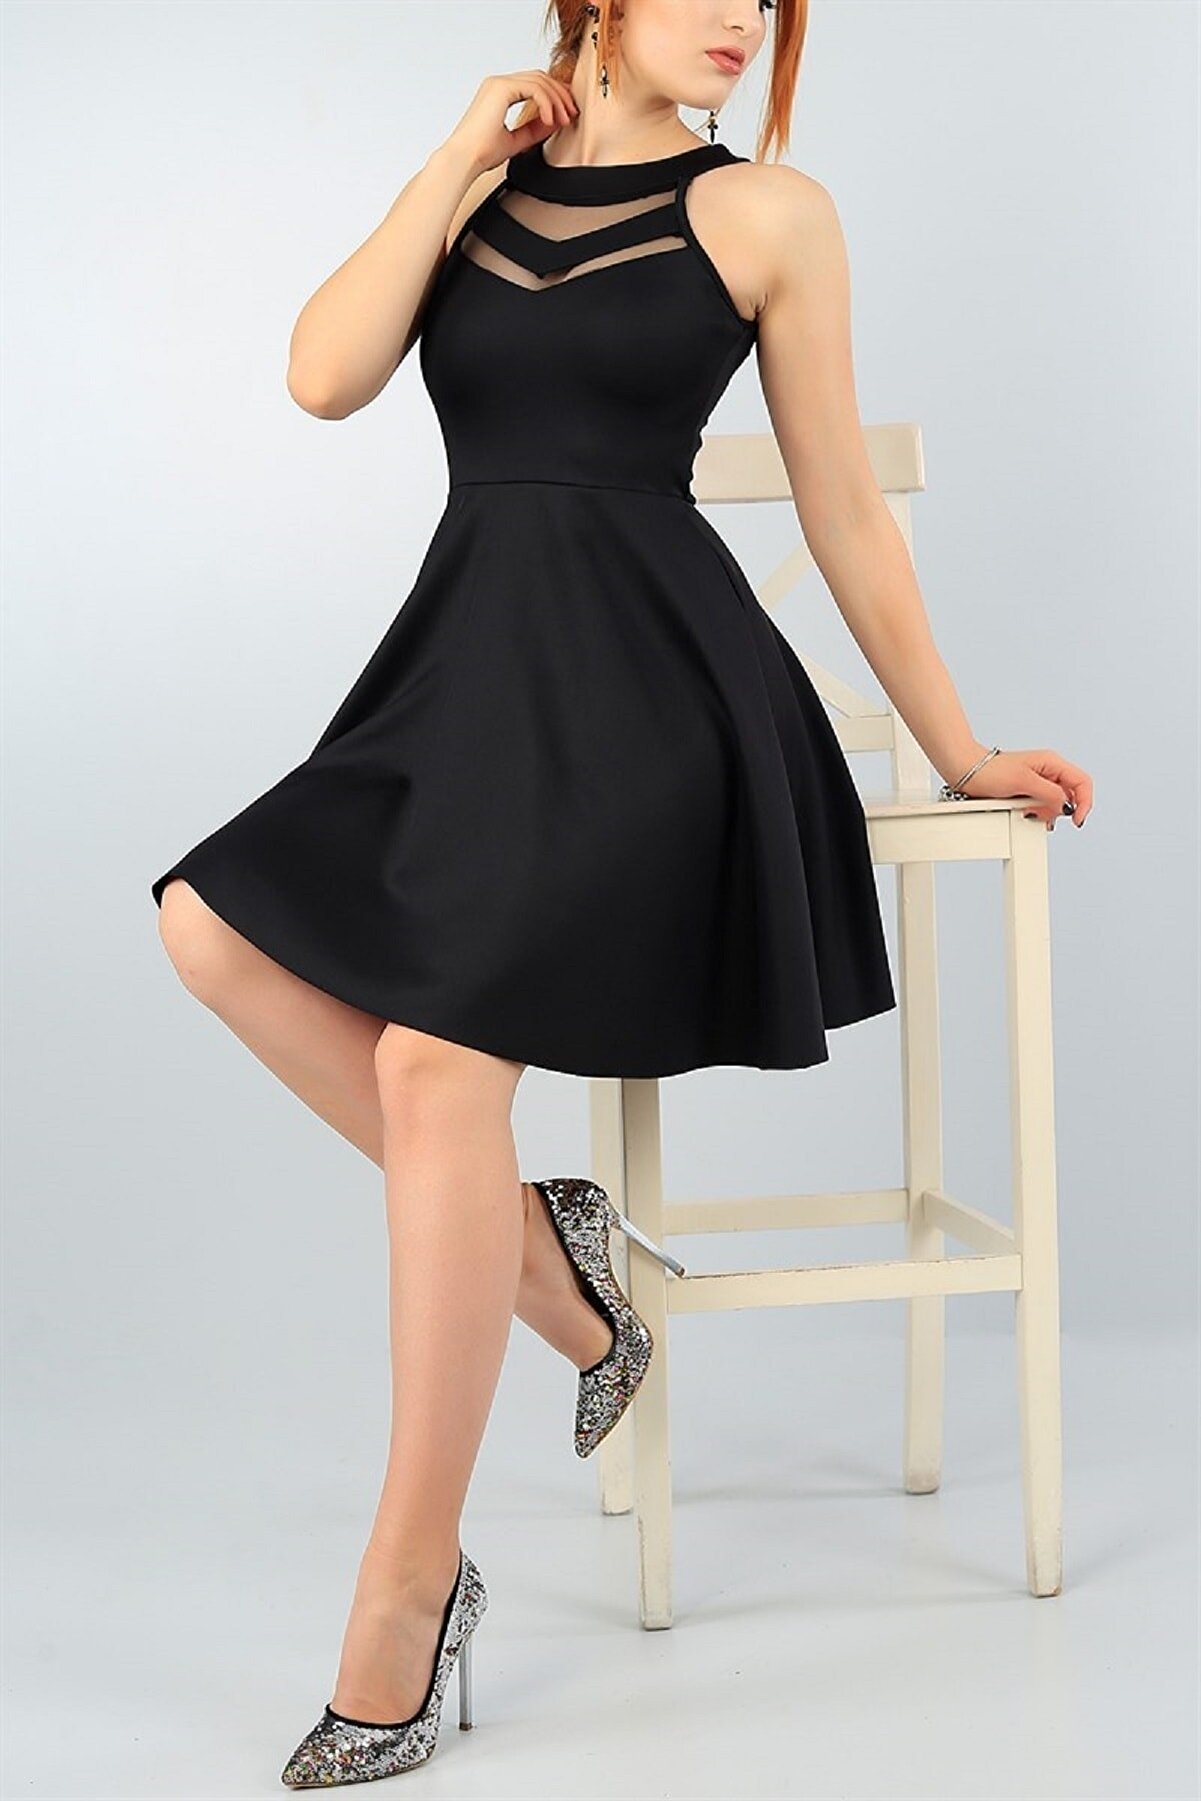 lovebox Kadın Esnek Scuba Kumaş Transparan Detaylı Siyah Elbise 2222